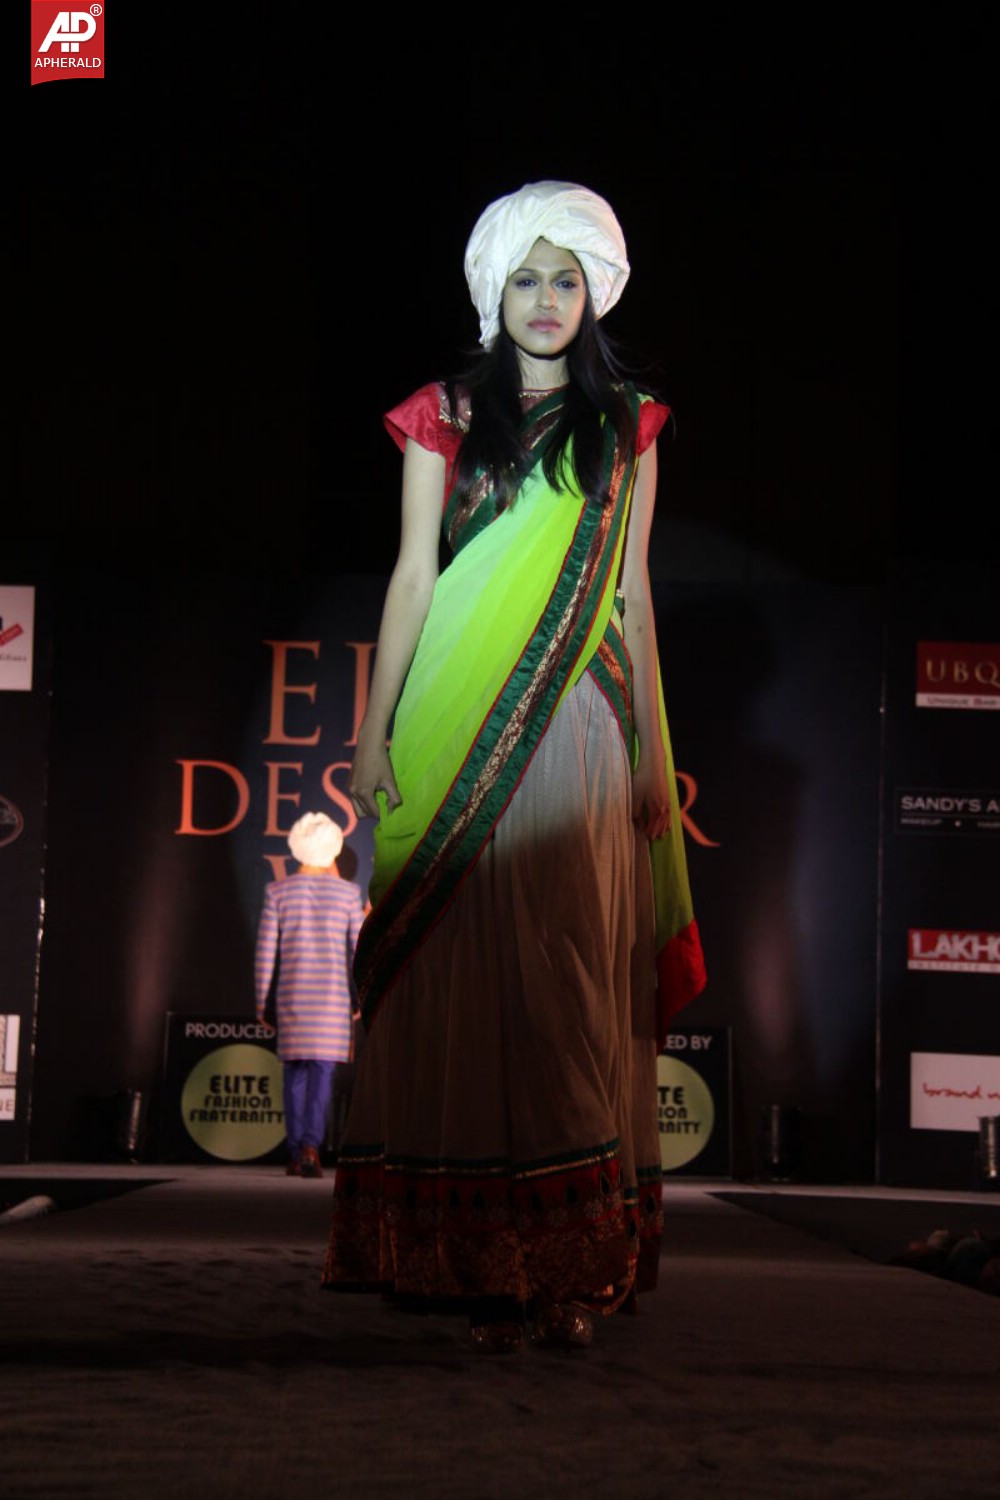 Elite Designer Fashion Show Week